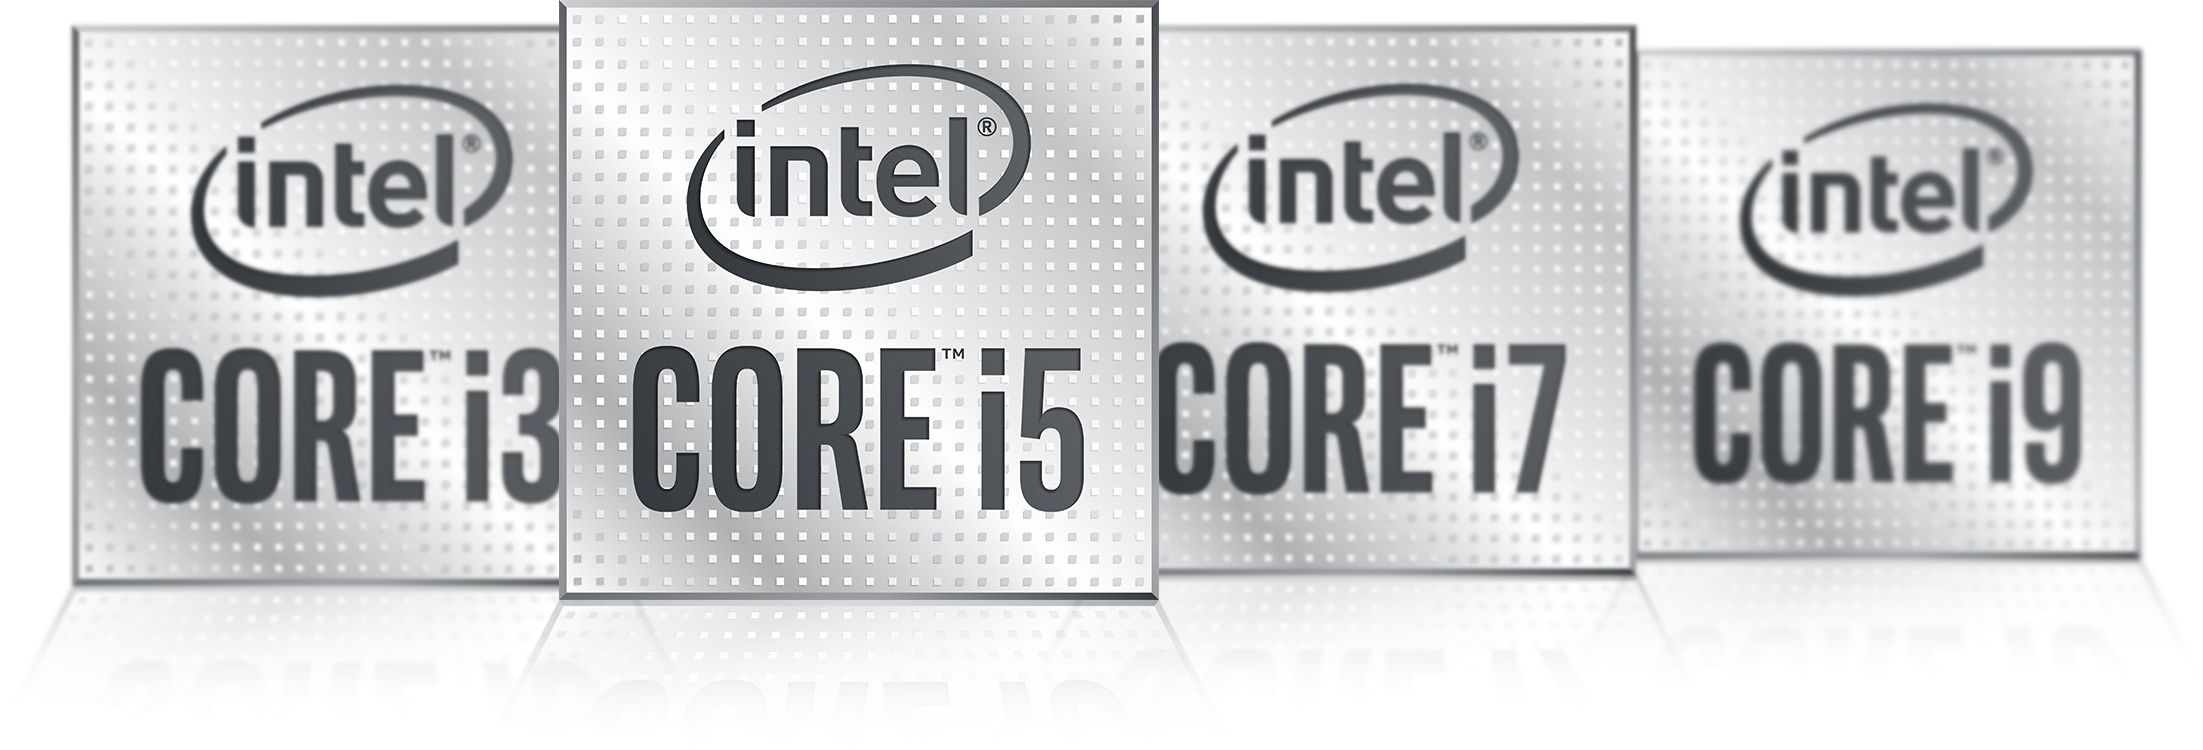 Intel 10th Gen Core i5 Comet Lake LGA1200 Processors